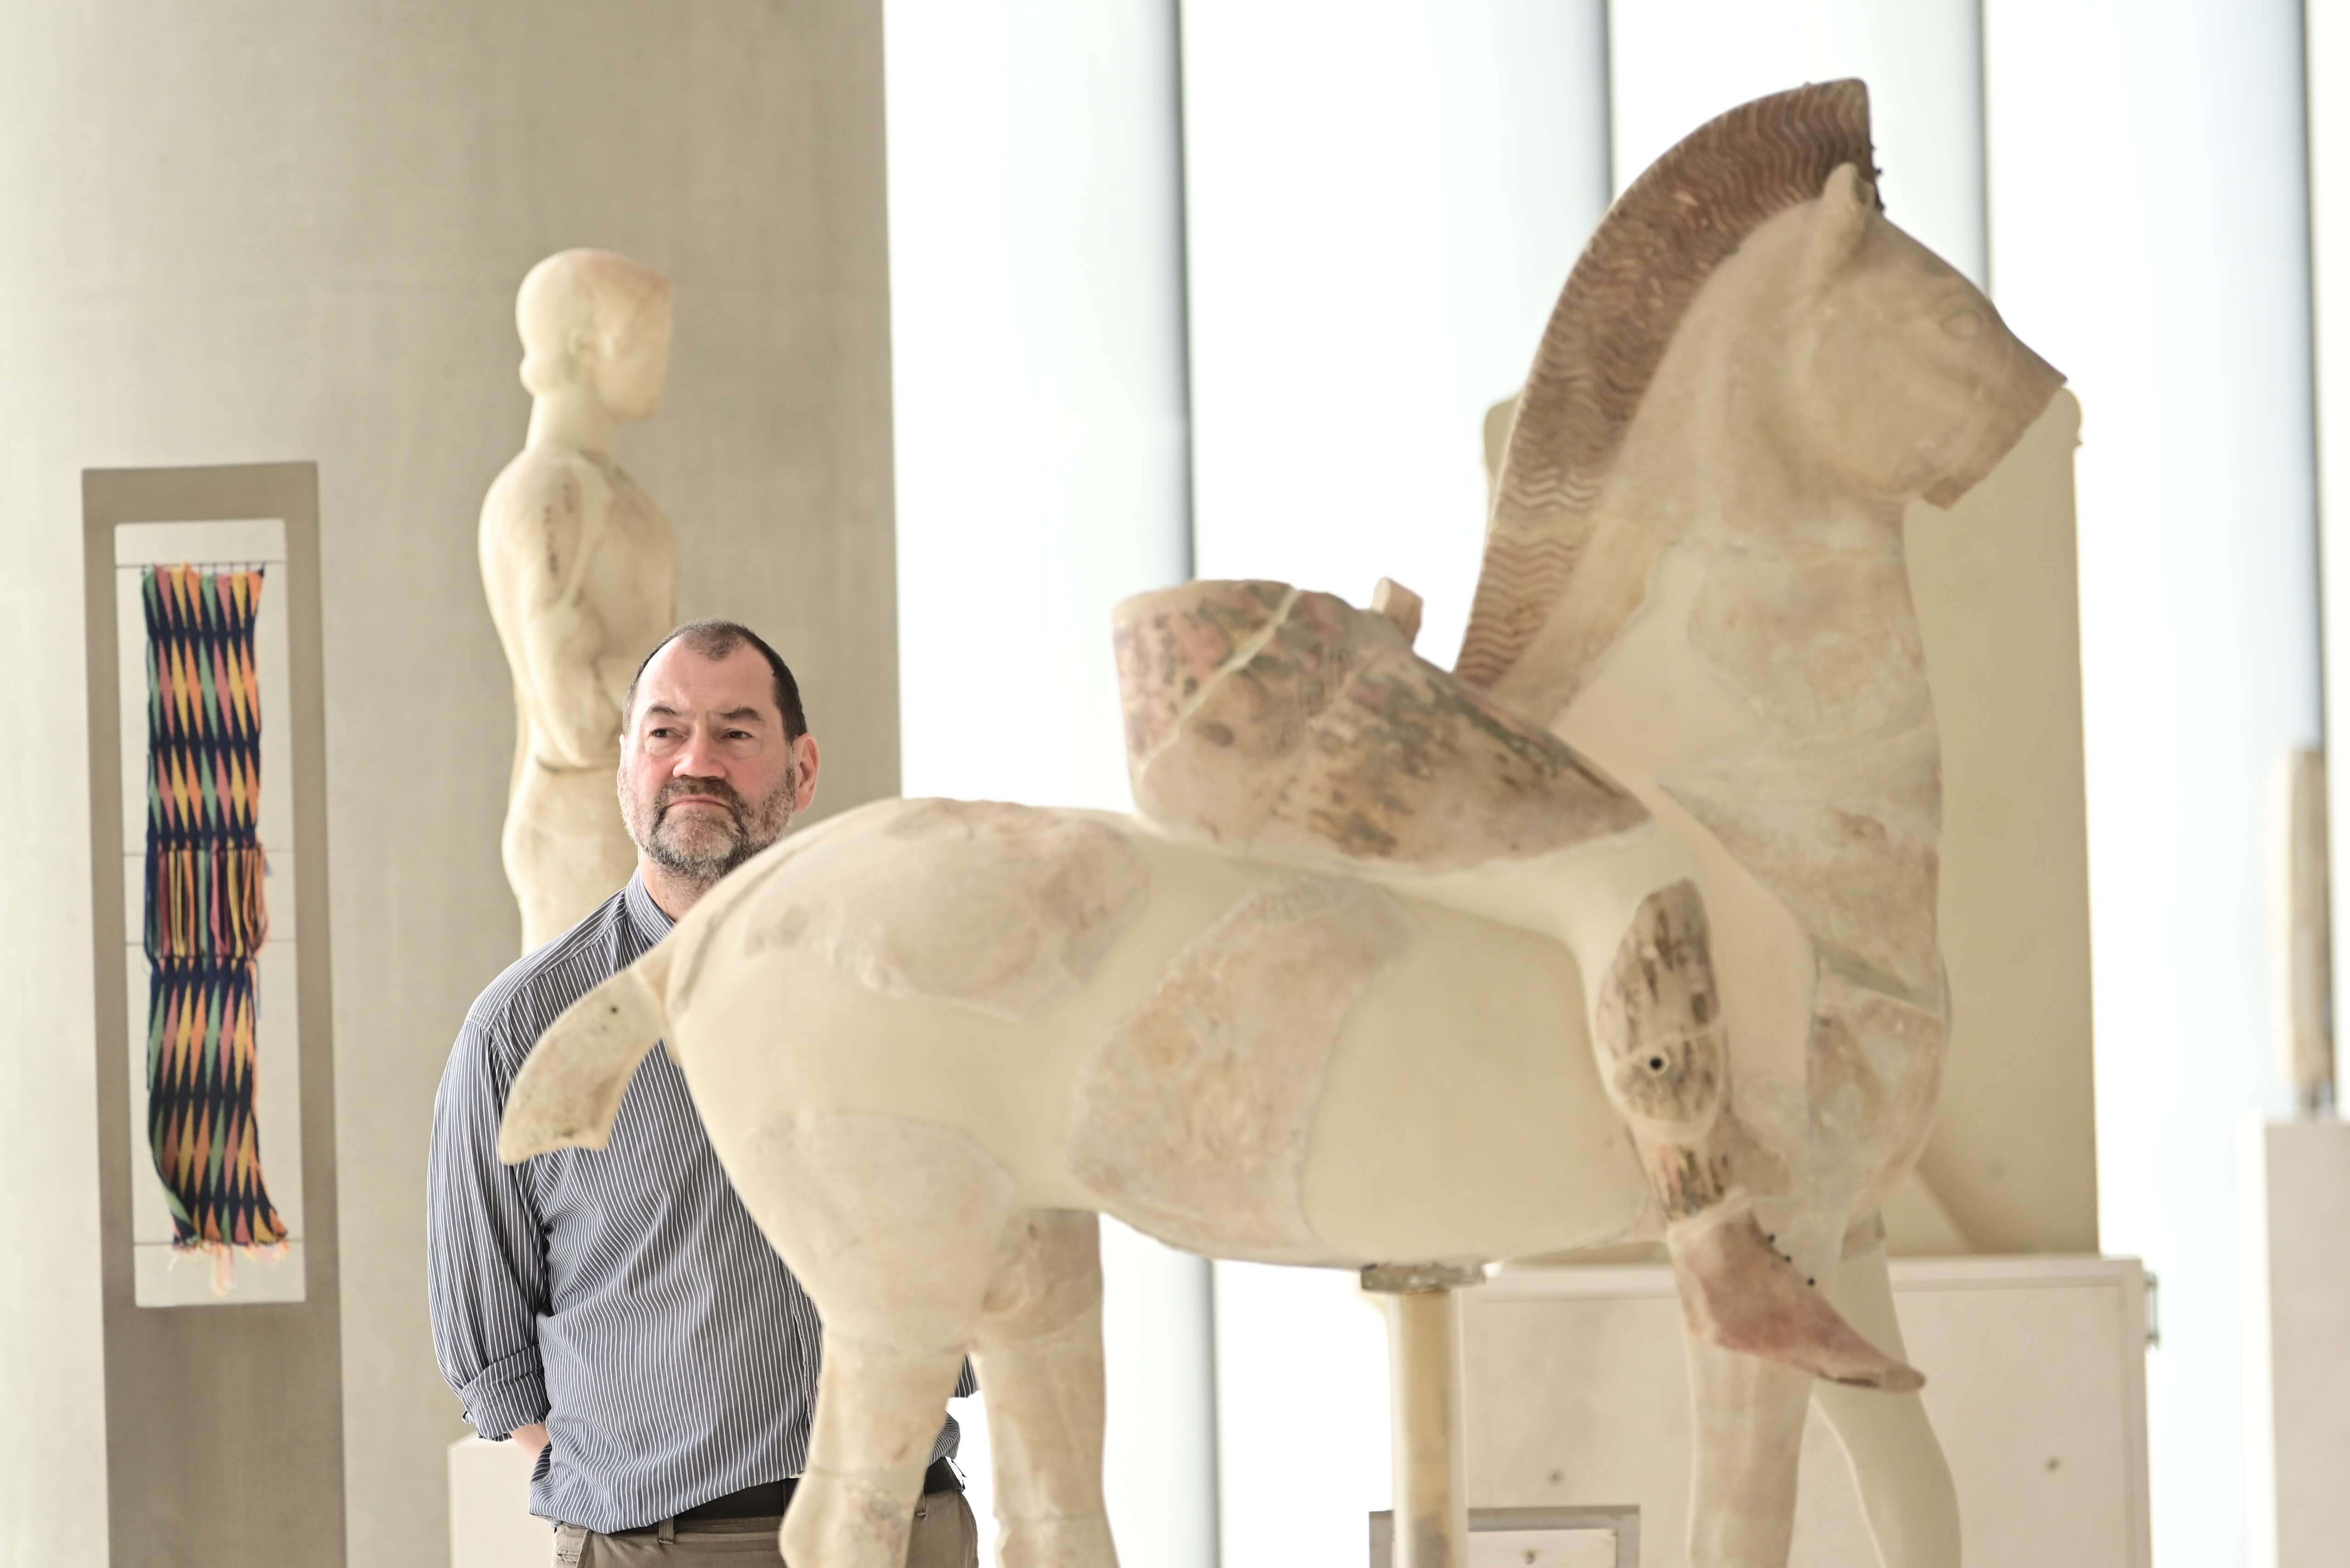 Απολύθηκε υπάλληλος του Βρετανικού Μουσείου γιατί έκλεβε αρχαιότητες – Τα αντικείμενα φυλάσσονταν σε αποθήκη